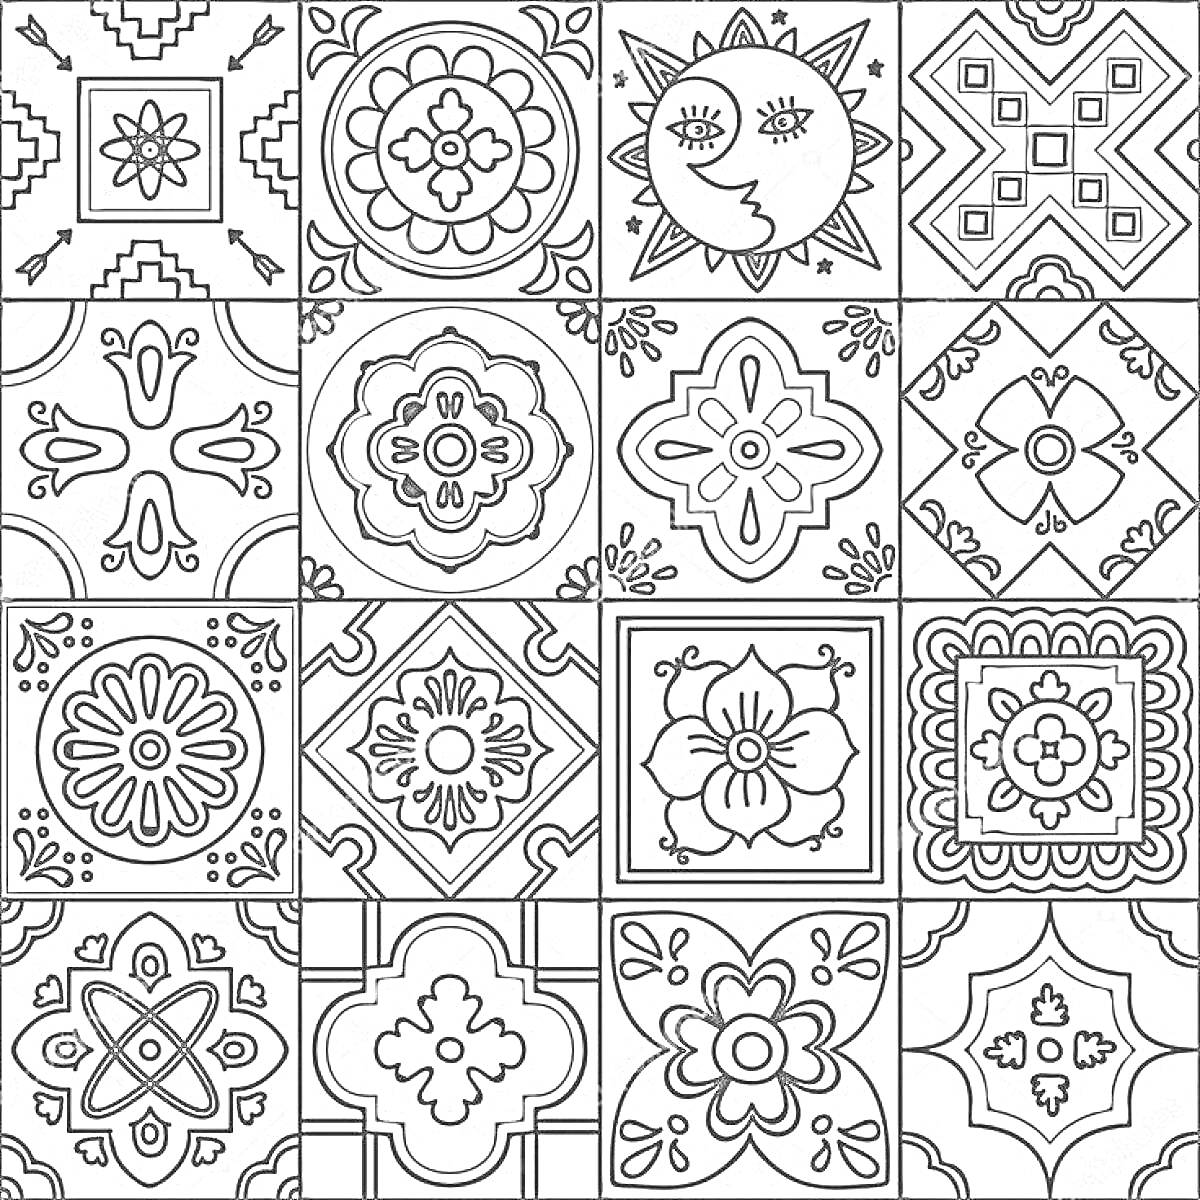 Раскраска Ручная керамическая плитка с различными геометрическими и цветочными орнаментами, включая солнце и луну, стрелы, сердца и кристаллы.